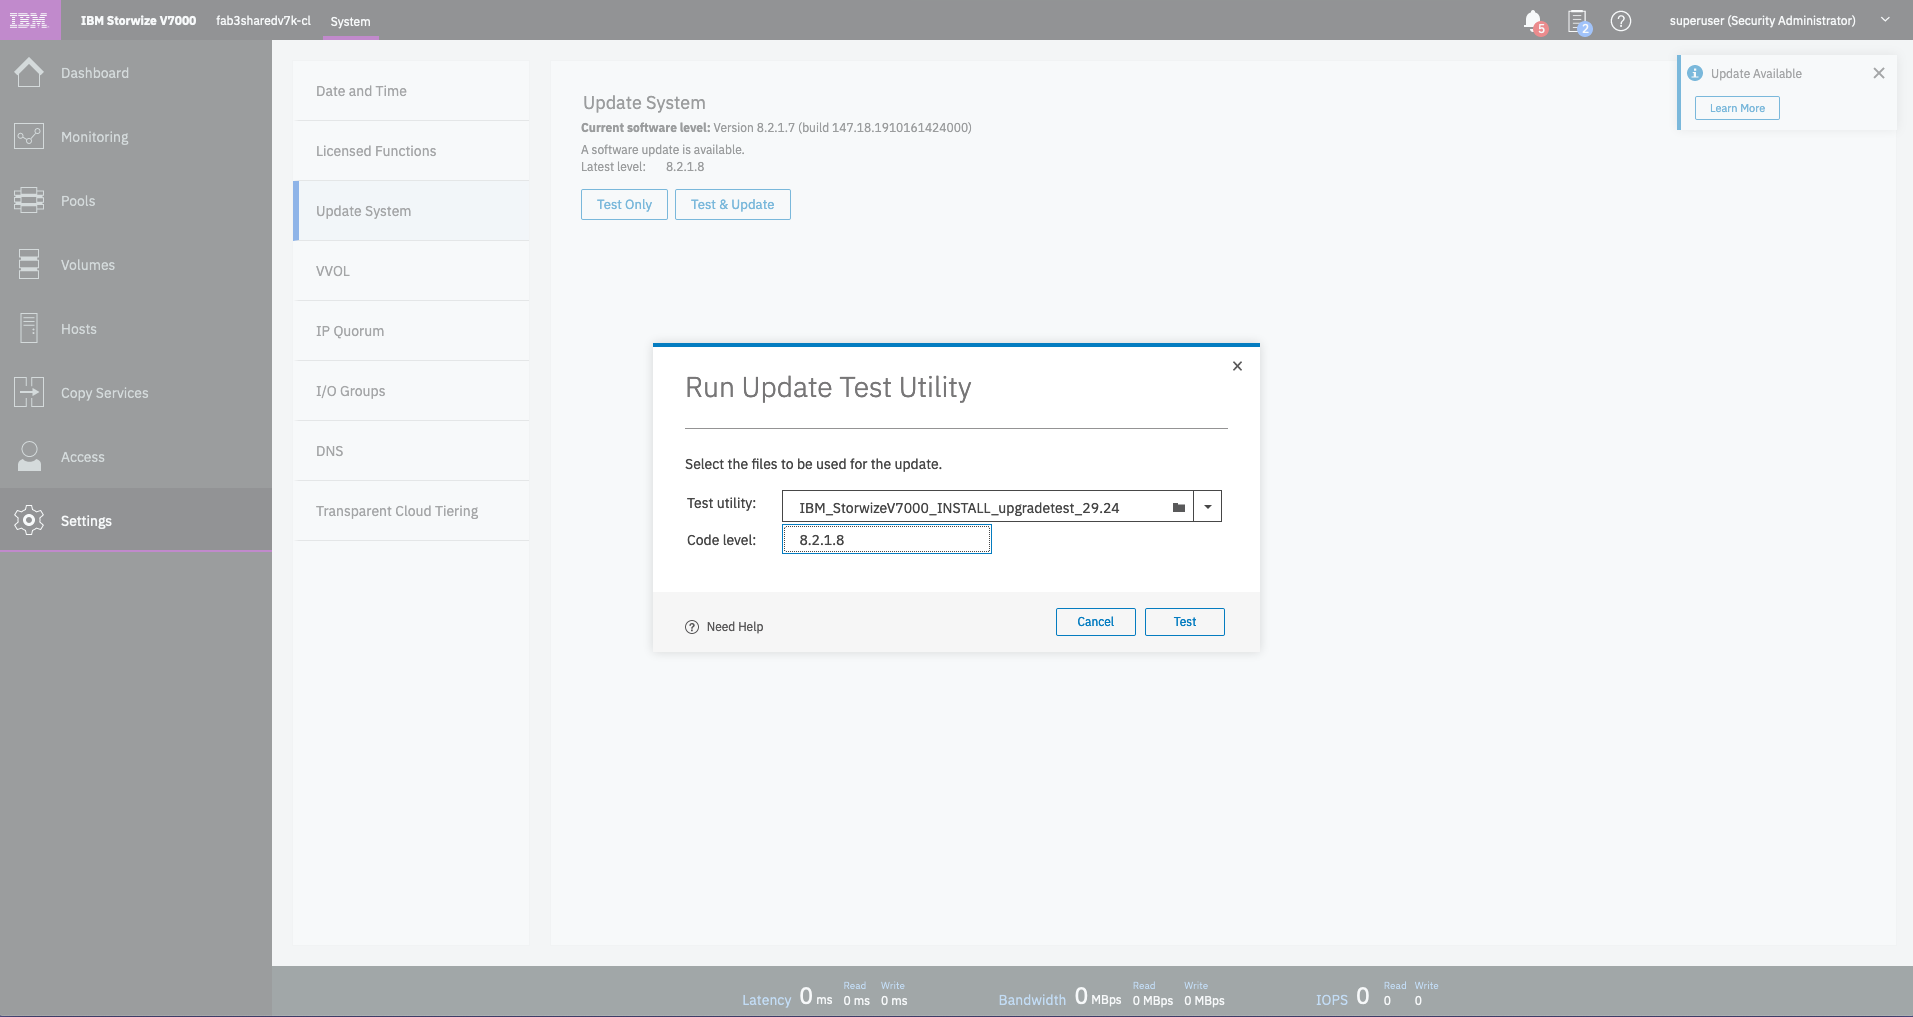 Update System - Run Update Test Utility